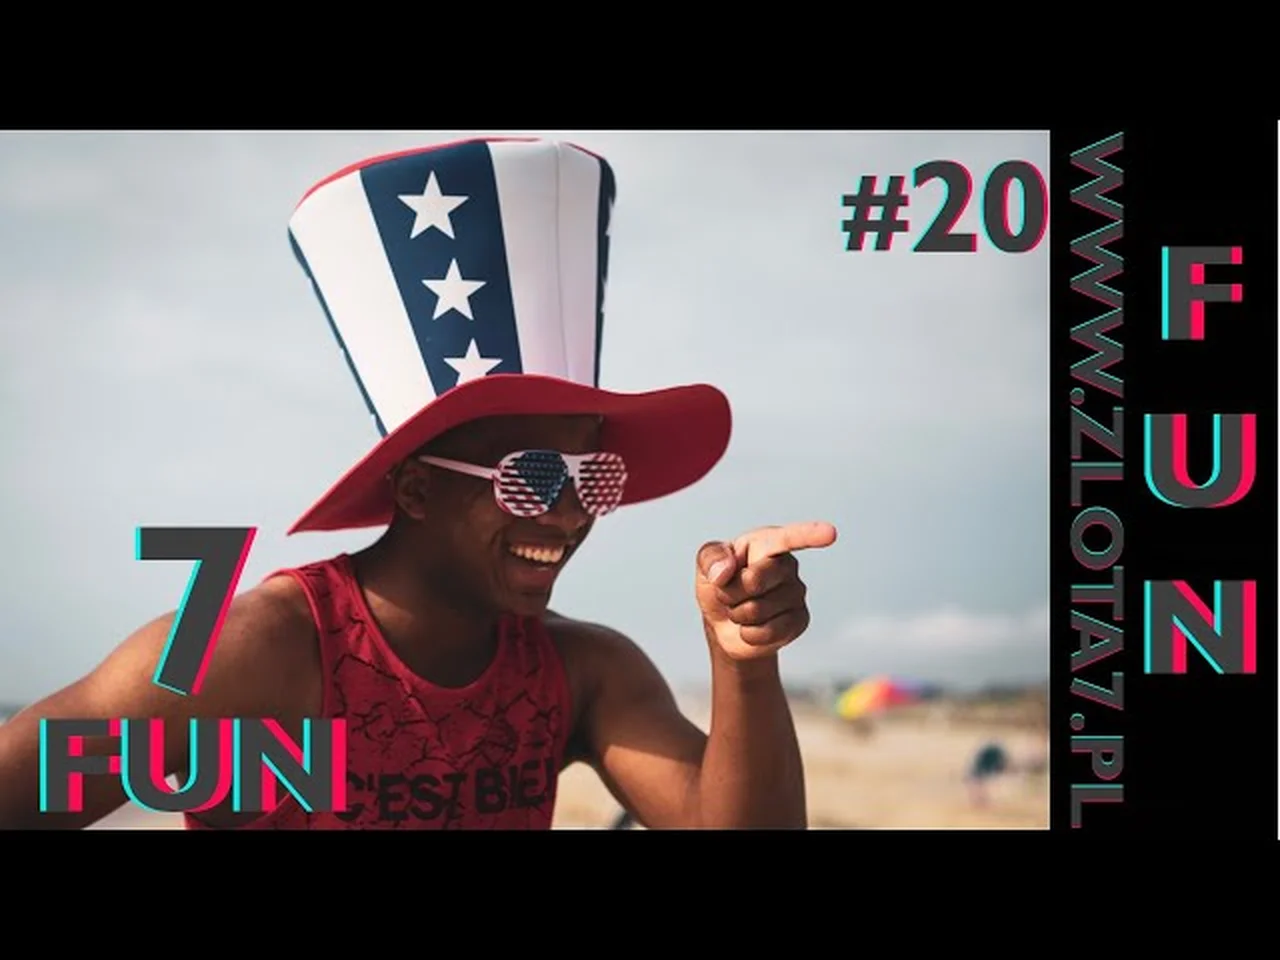 #20 Nudzisz się? Sprawdź te śmieszne filmy i zabawne sytuacje 7Fun